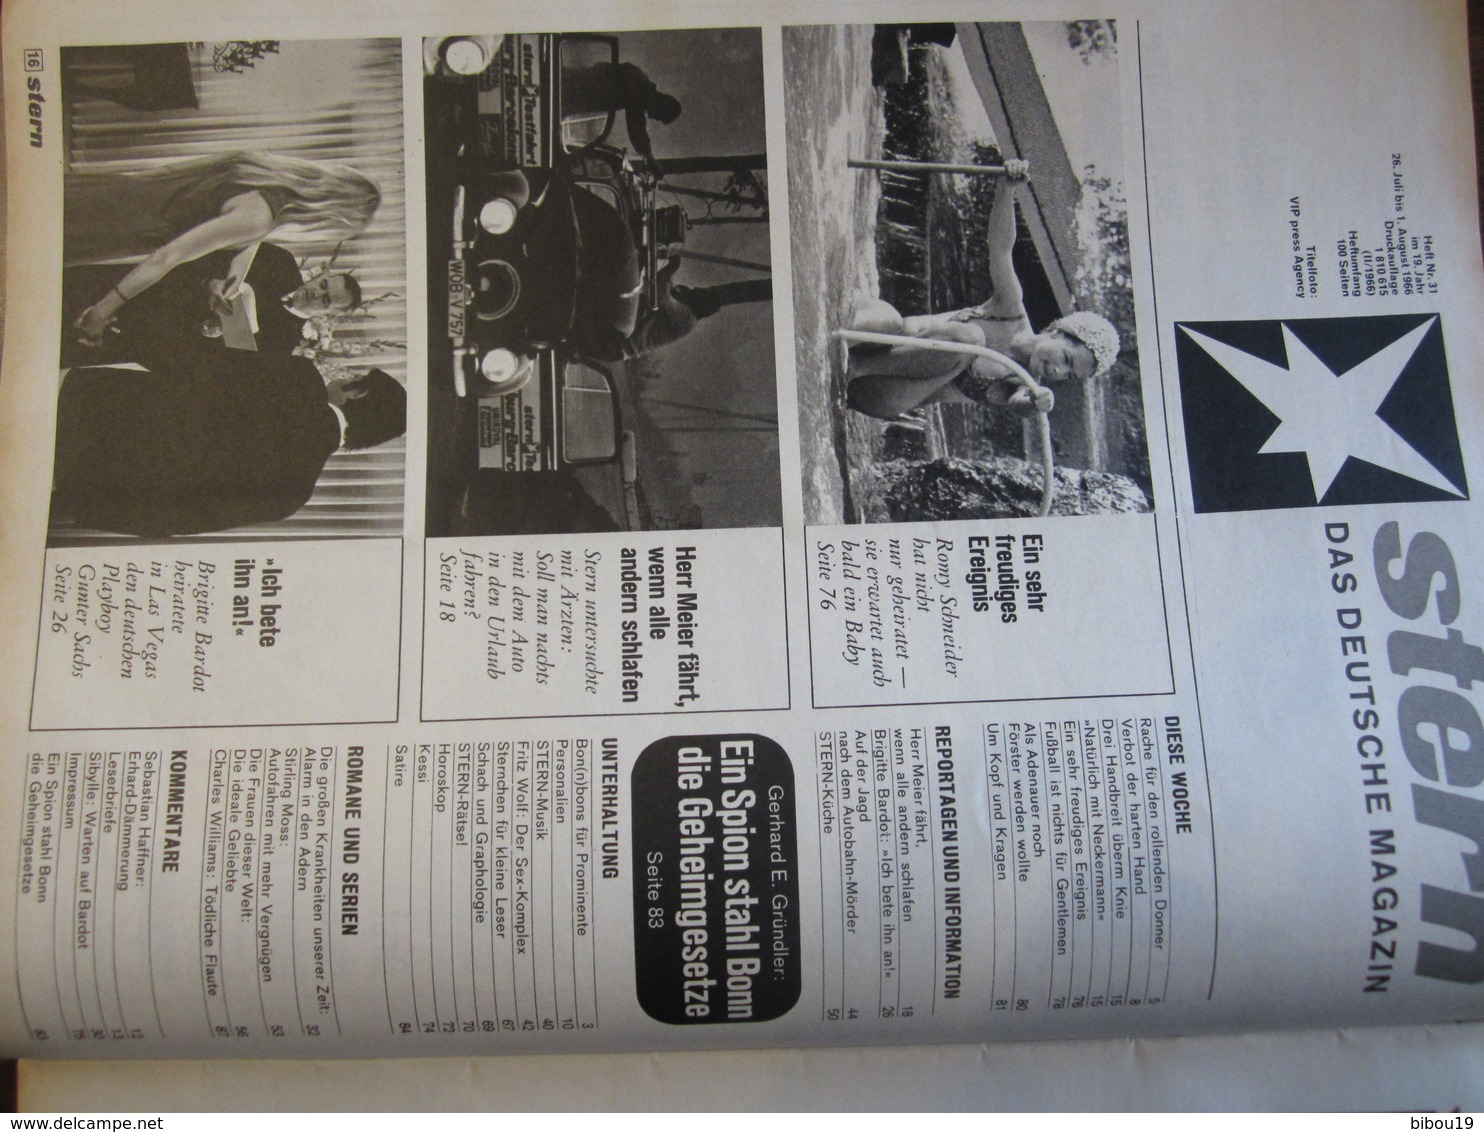 MAGAZINE STERN JULI 1966 BB UBER GUNTER SACHS ICH BETE IHN AN  DIE IDEALE GELIEBTE  N 31 - Travel & Entertainment